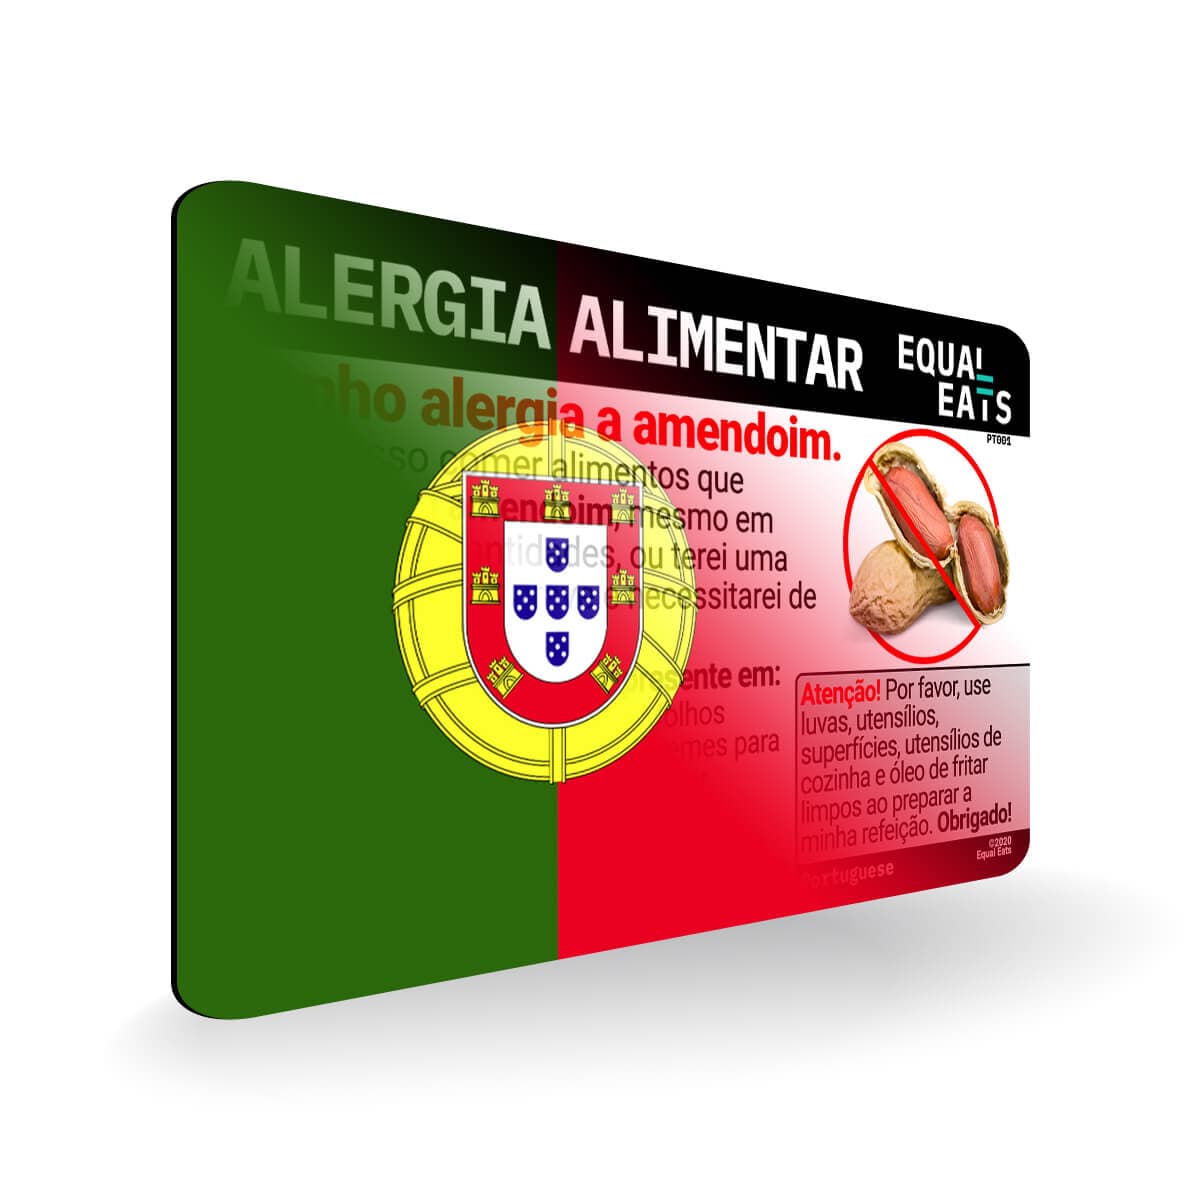 Peanut Allergy in Portuguese